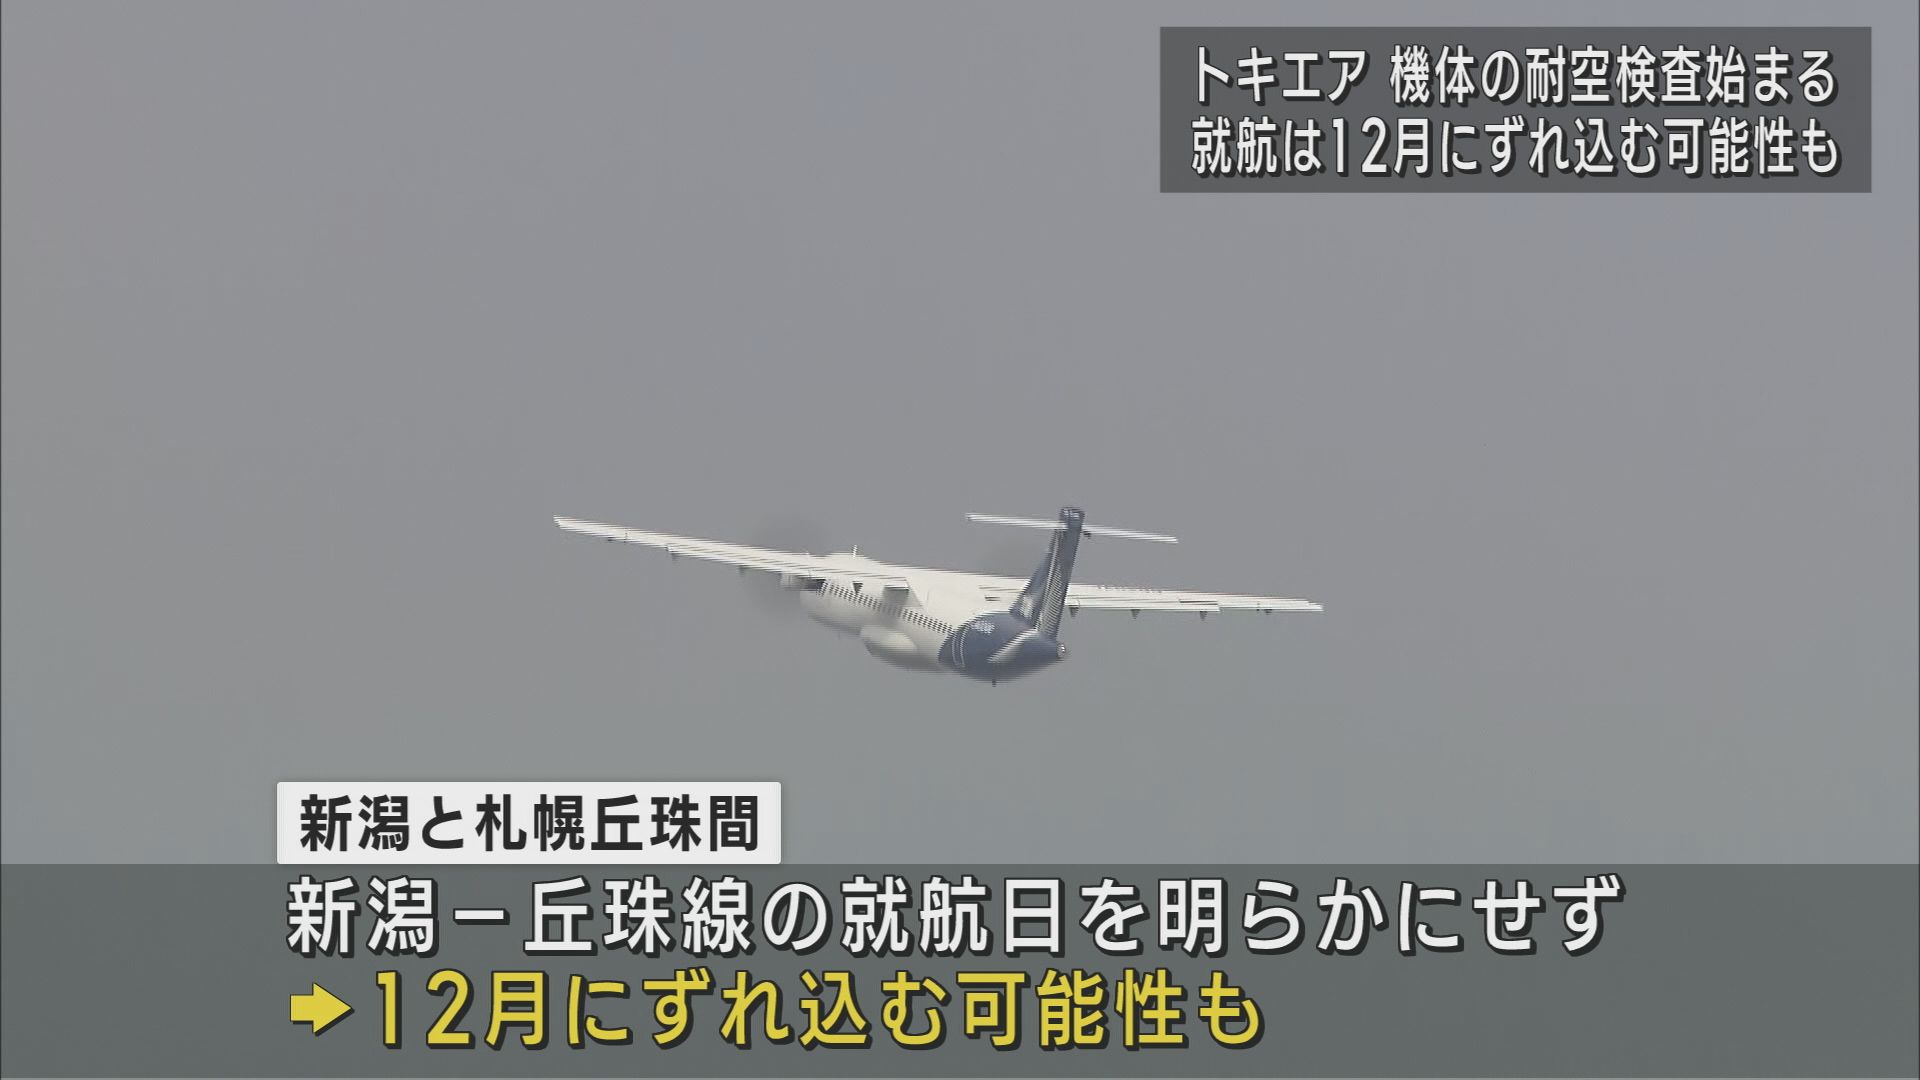 トキエア 就航は12月にずれ込む可能性 機体の耐空検査始まる【新潟】